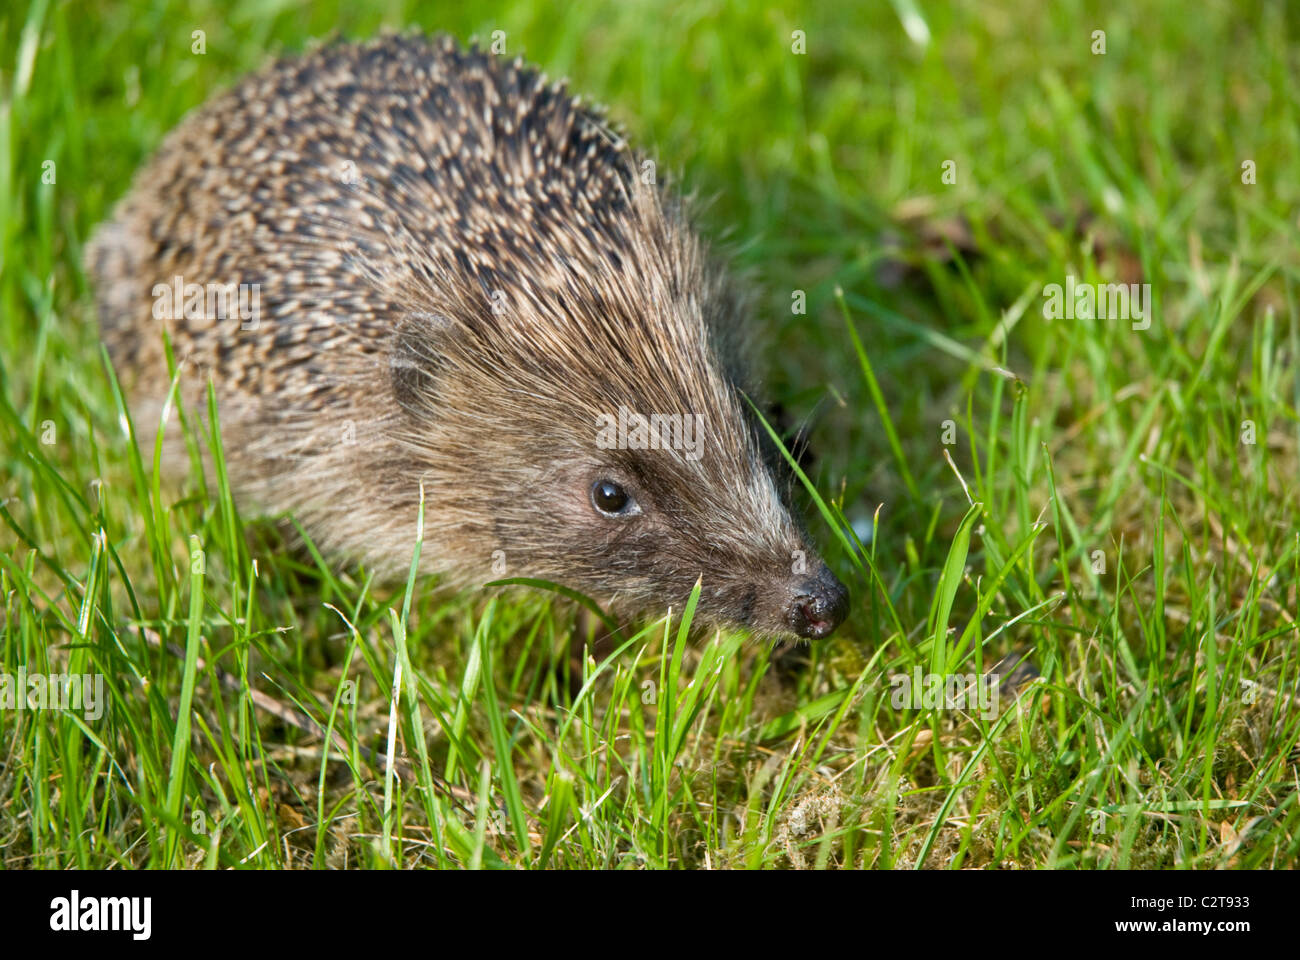 A hedgehog in an English garden Stock Photo